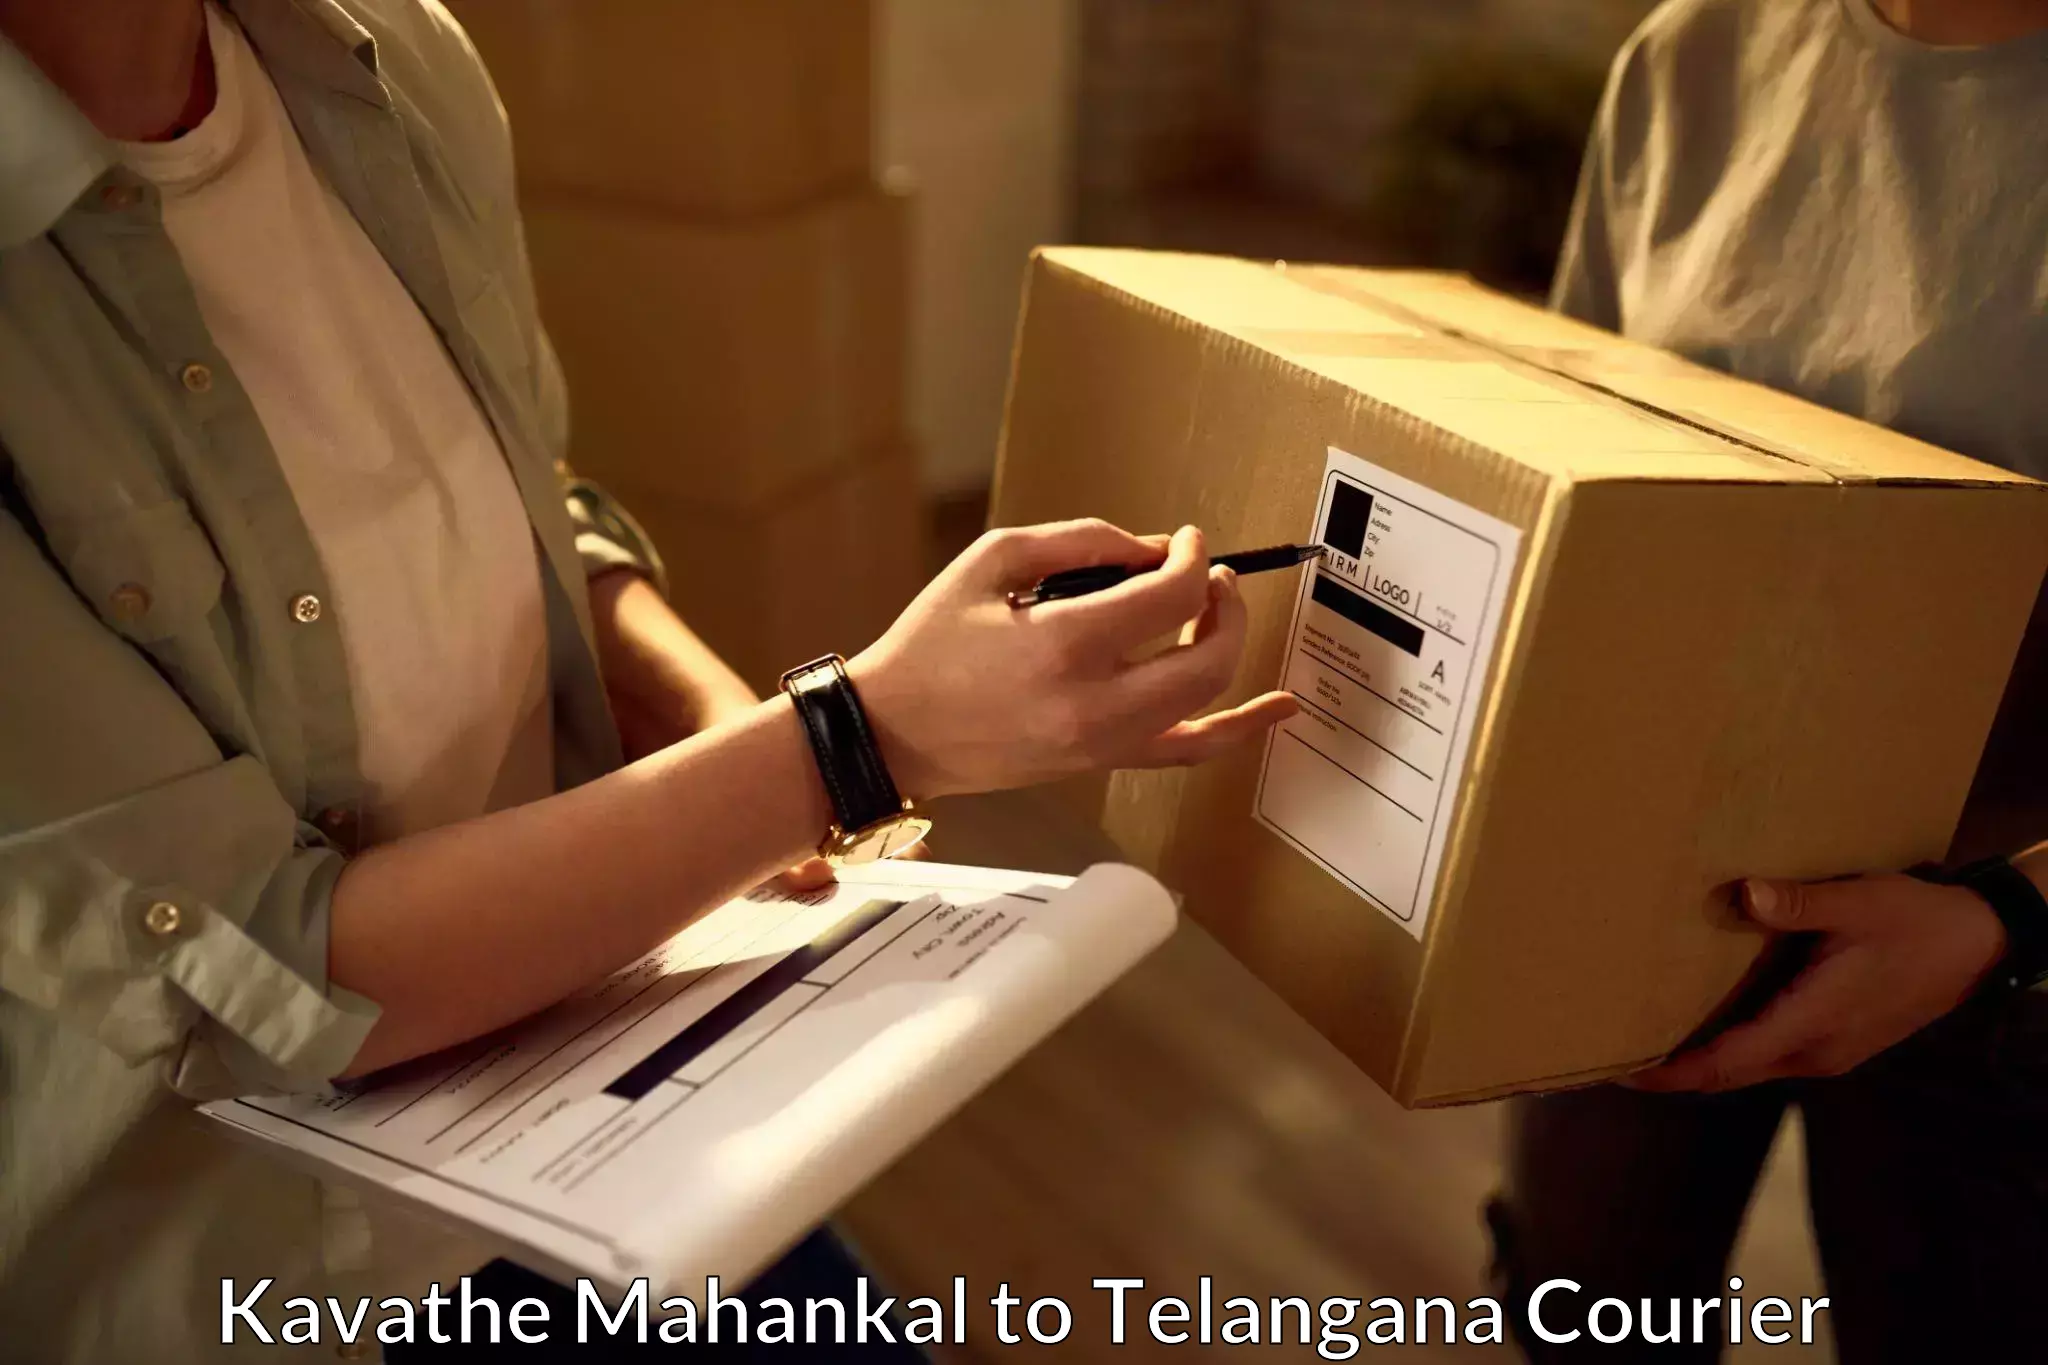 Urban courier service Kavathe Mahankal to Telangana